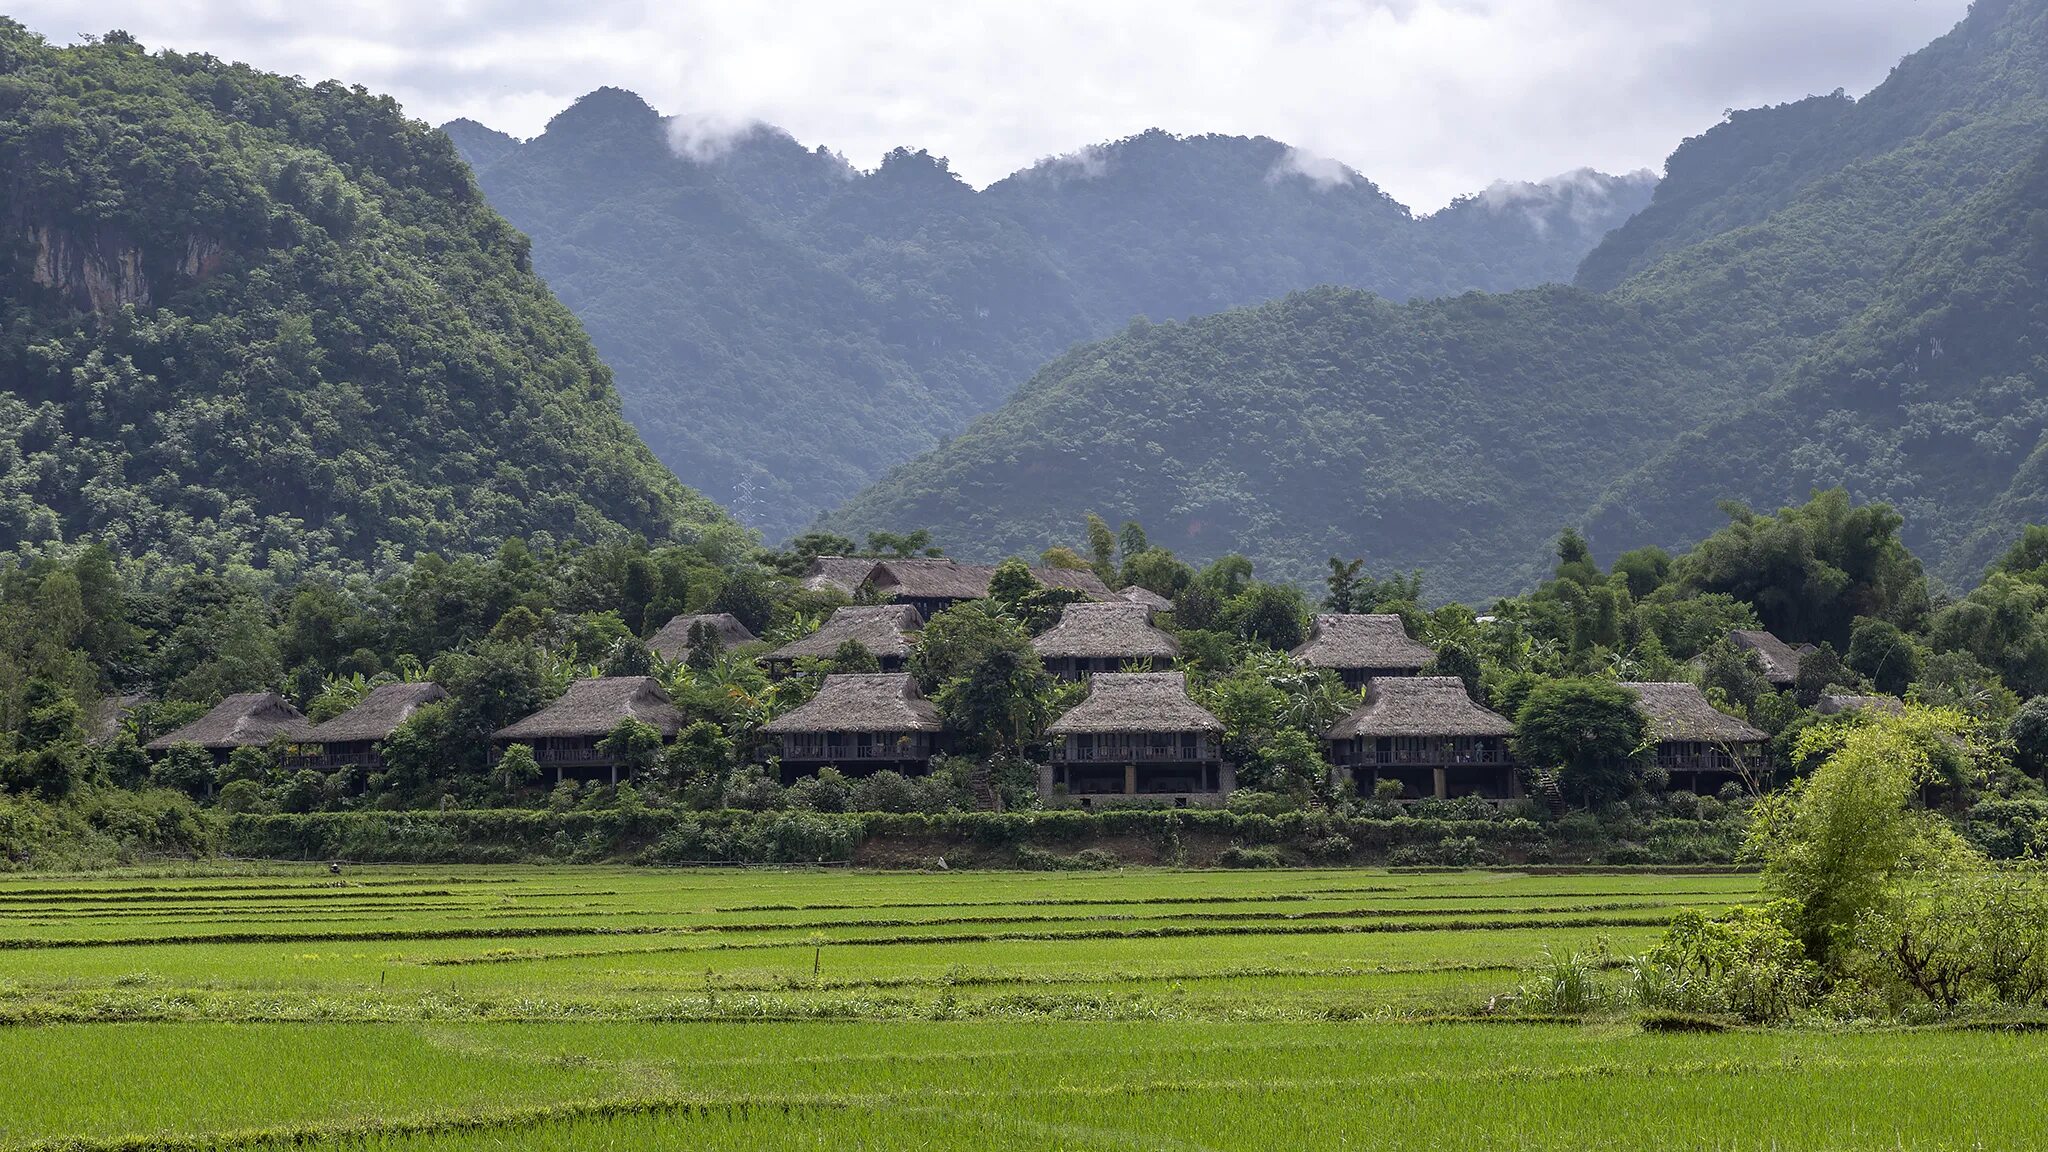 Вьетнам village. Гора Пхубиа Вьетнам. Деревня Хуалу Вьетнам. Лаос деревня ban Kiet ngong. Вьетнамские горы.